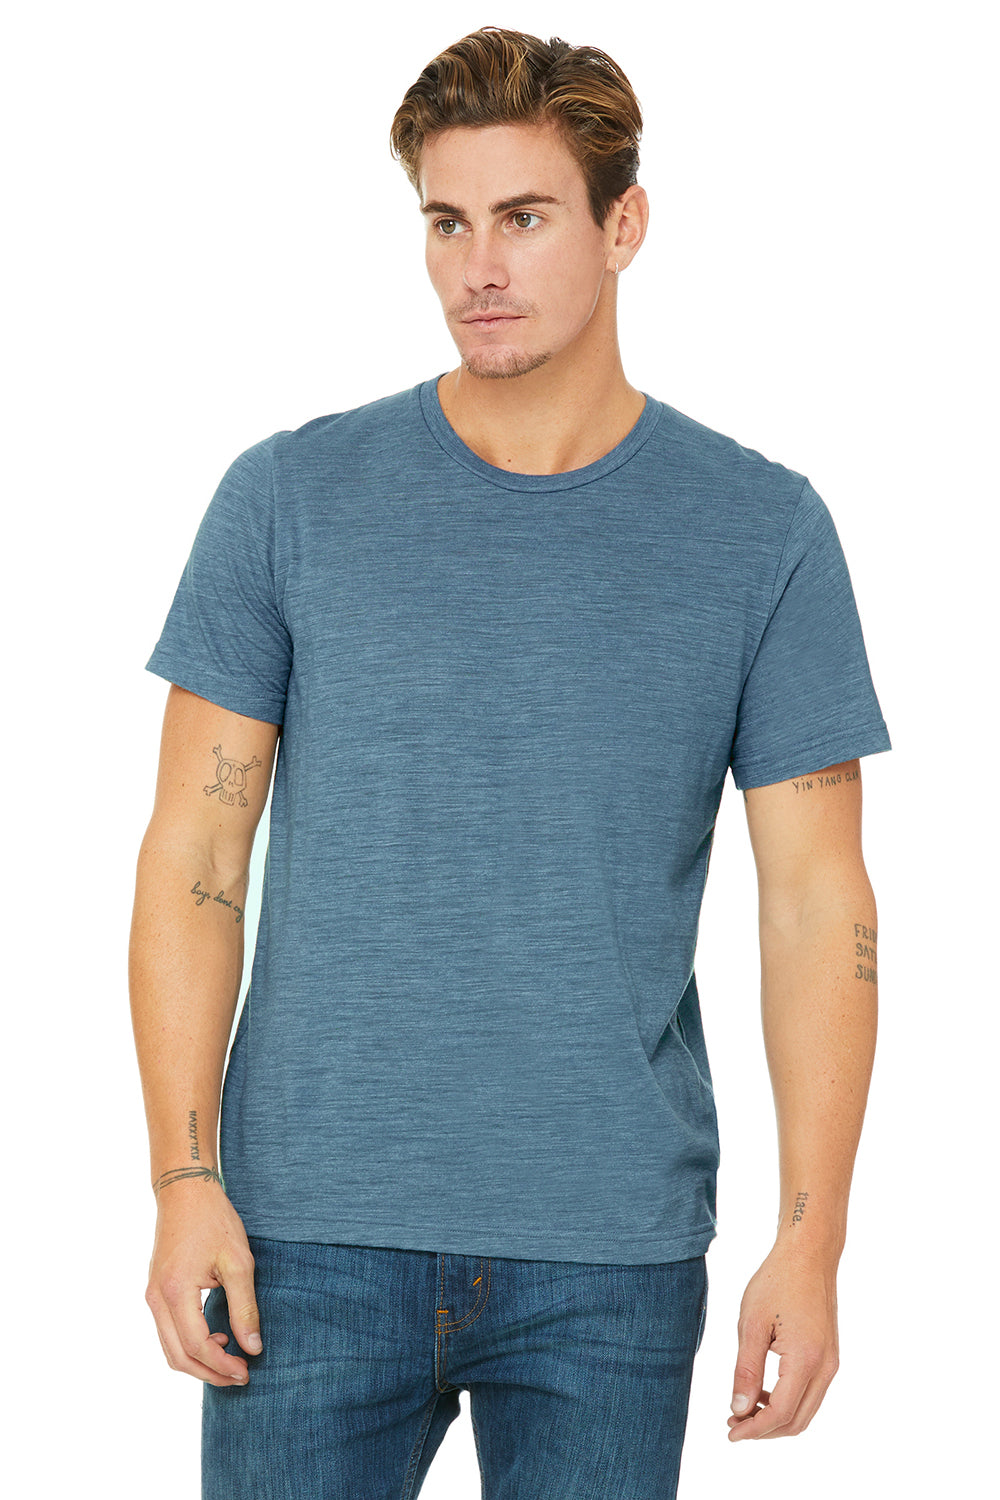 Bella + Canvas 3650 Mens Short Sleeve Crewneck T-Shirt Denim Blue Slub Front